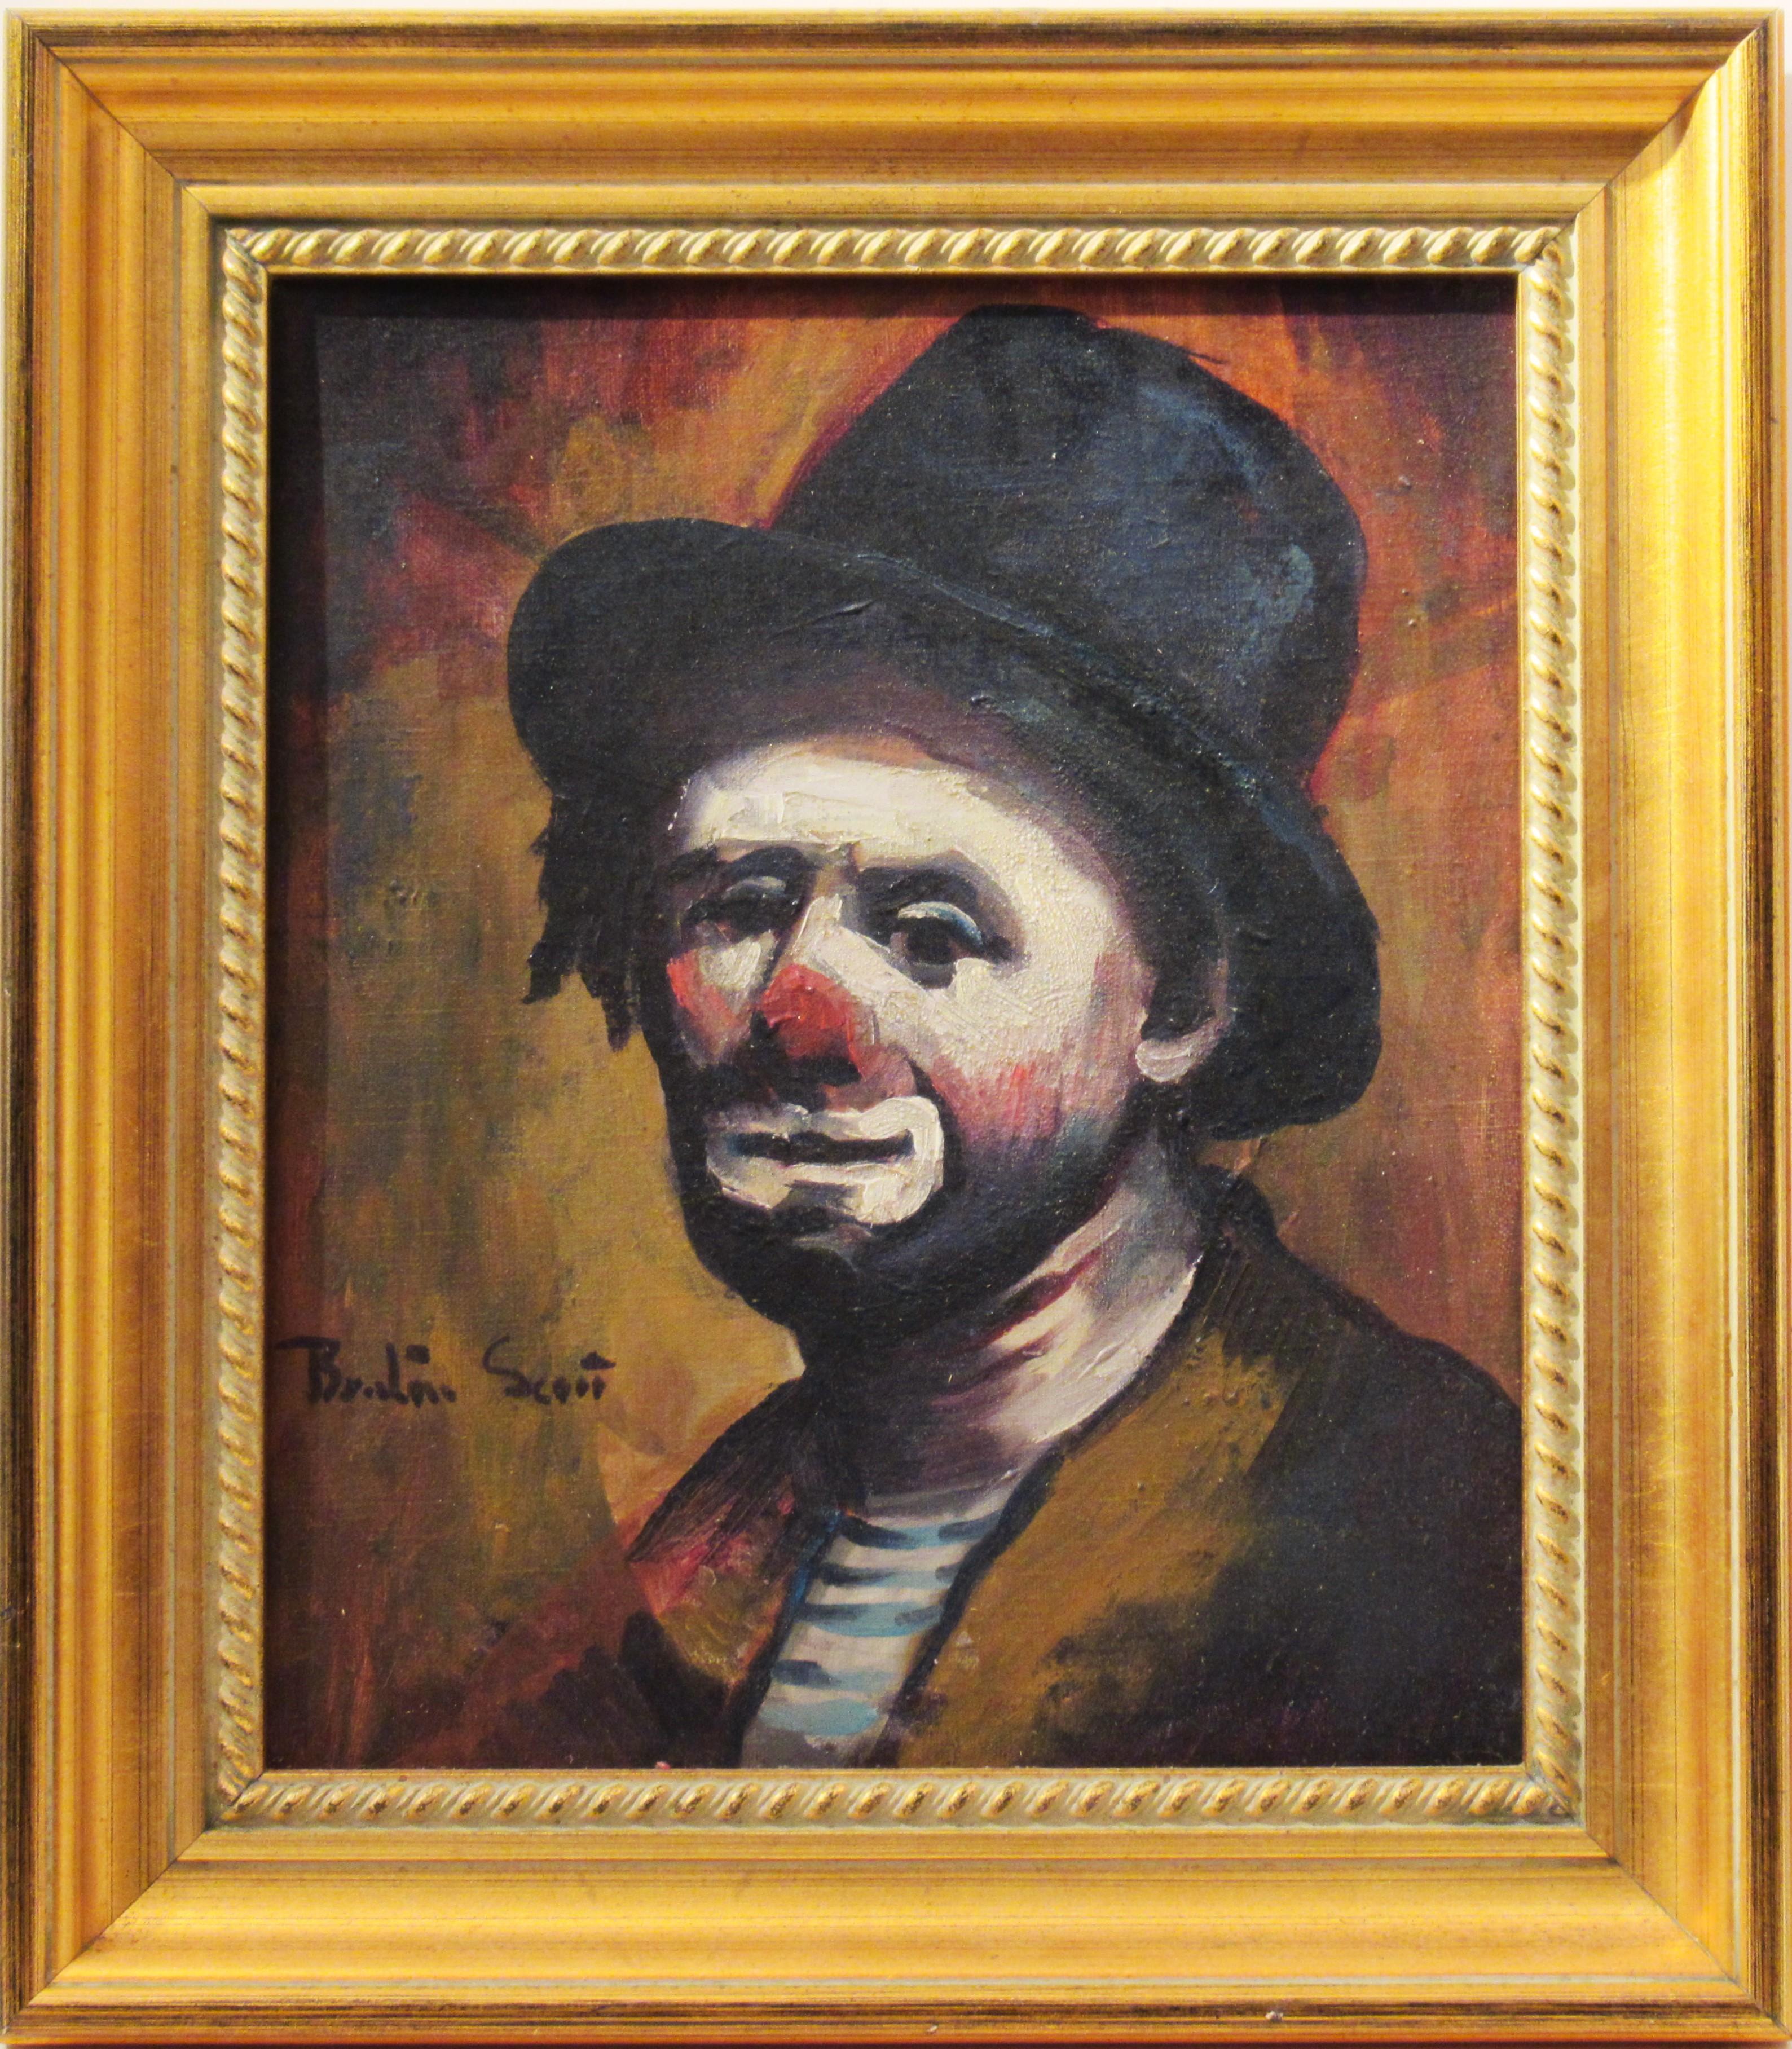 Figurative Painting Benton Scott - Clown du cirque de Medrano, France